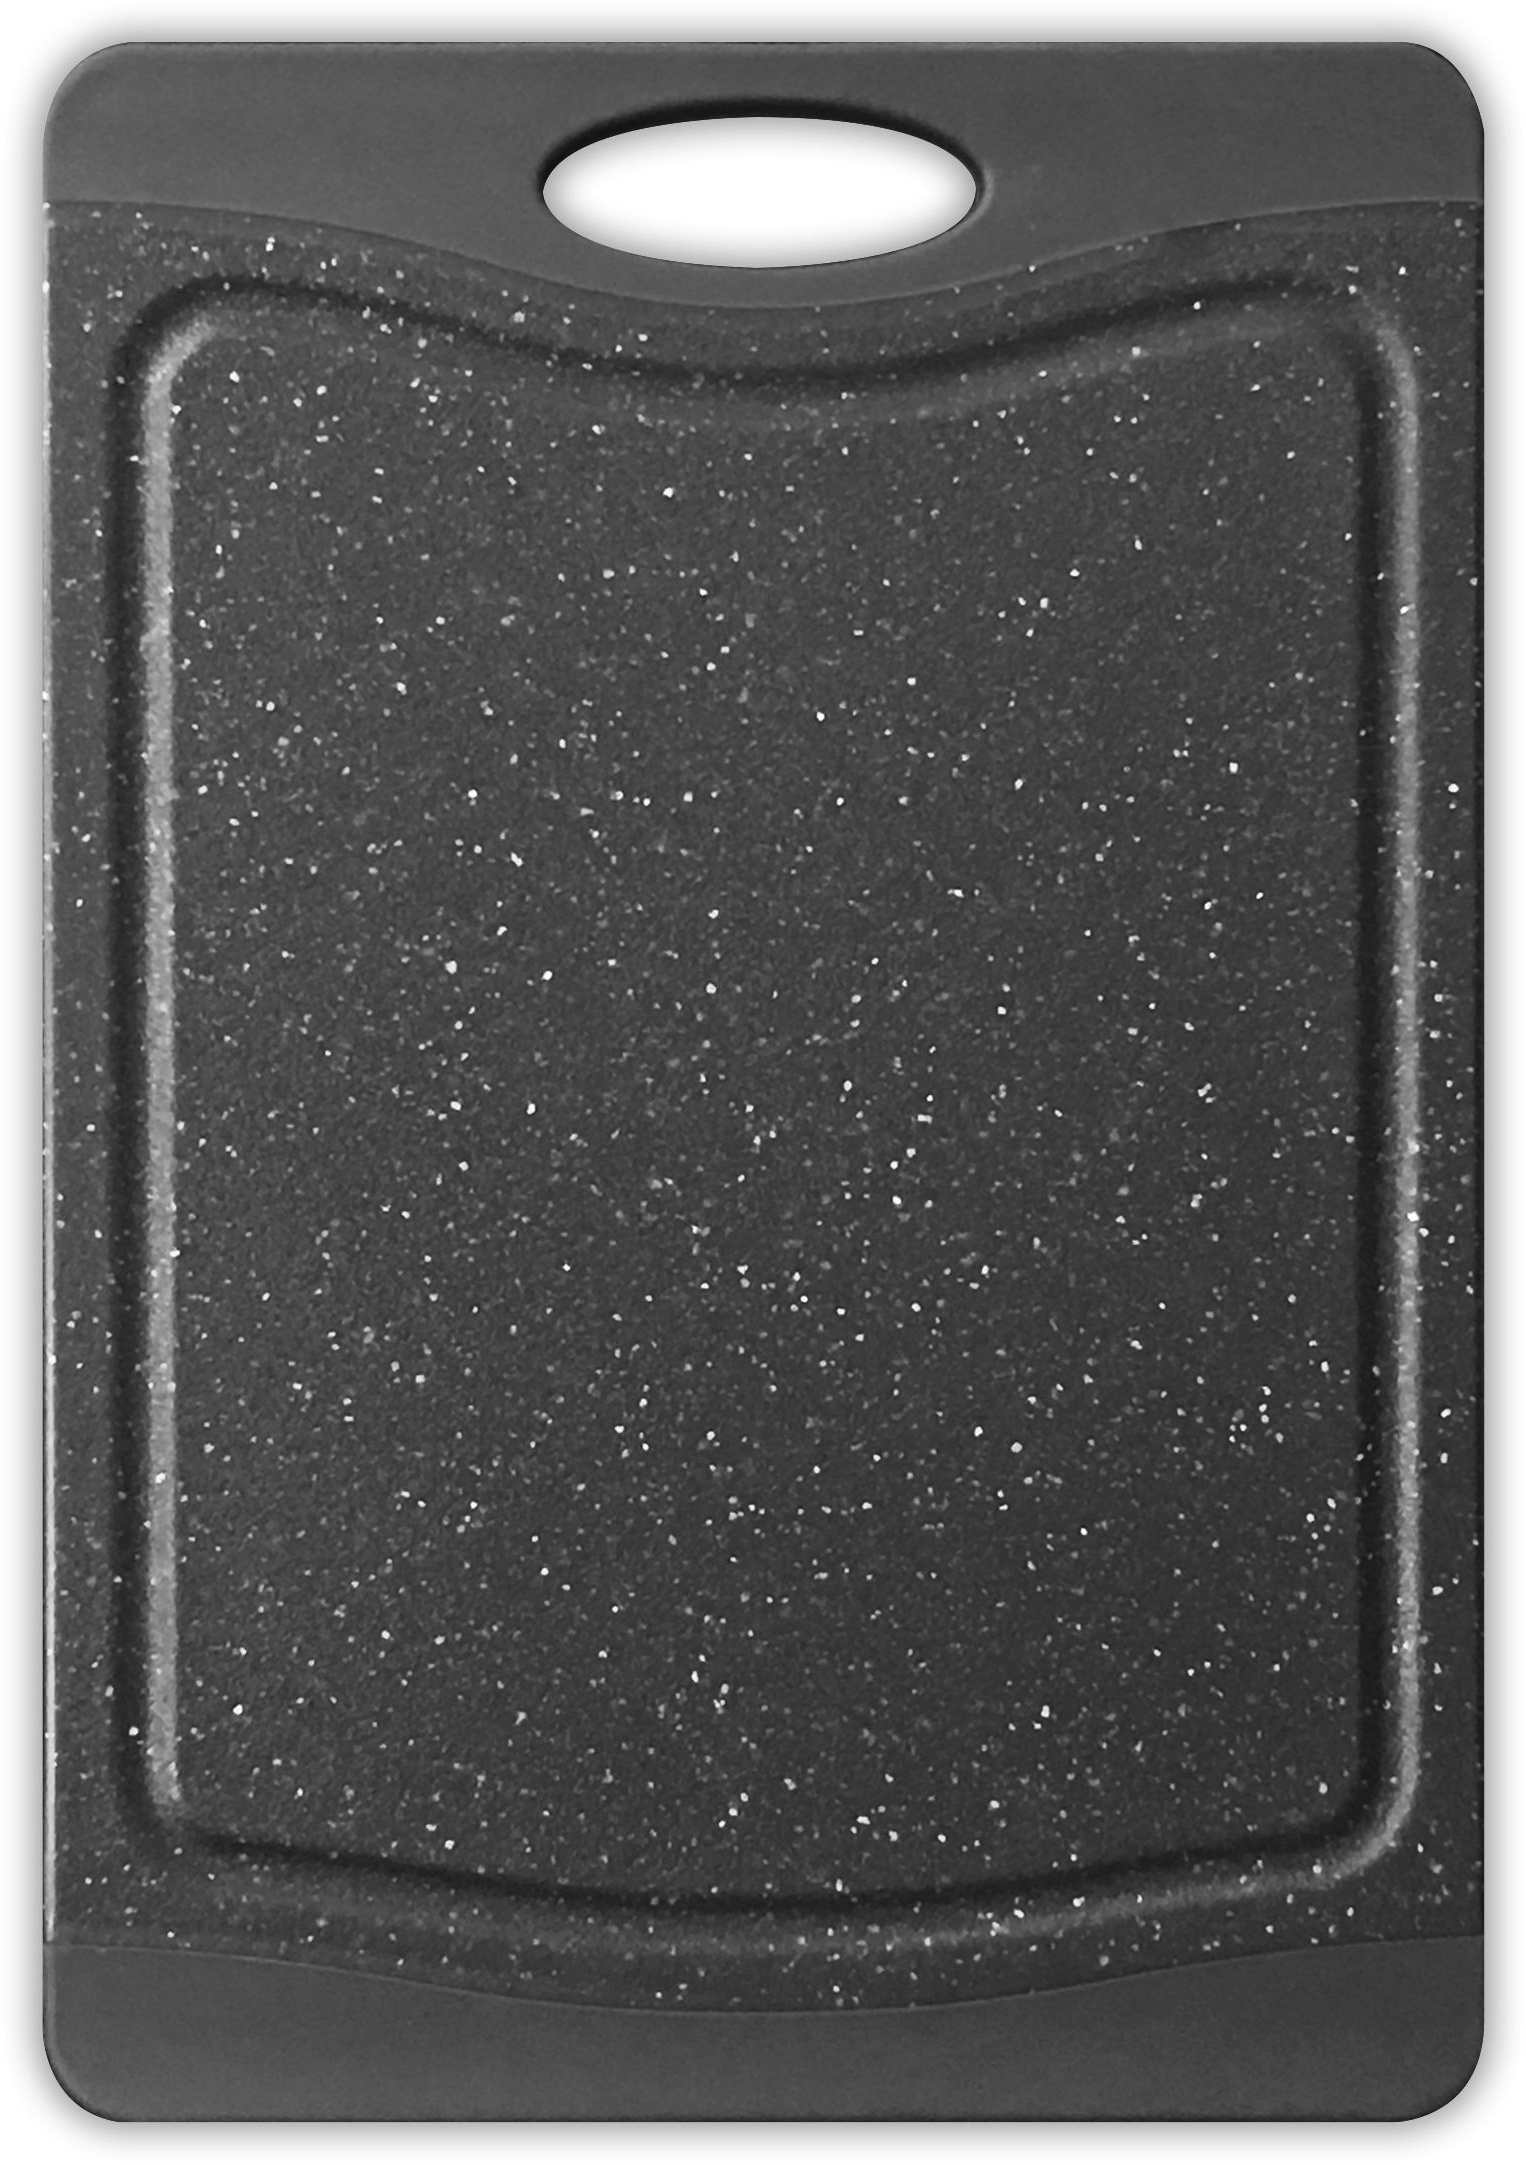 Tarrington House Schneidebrett, Polypropylene/thermoplastischem Kunststoff, 29 x 20 x 1.2 cm, rutschfeste Kanten, schwarz